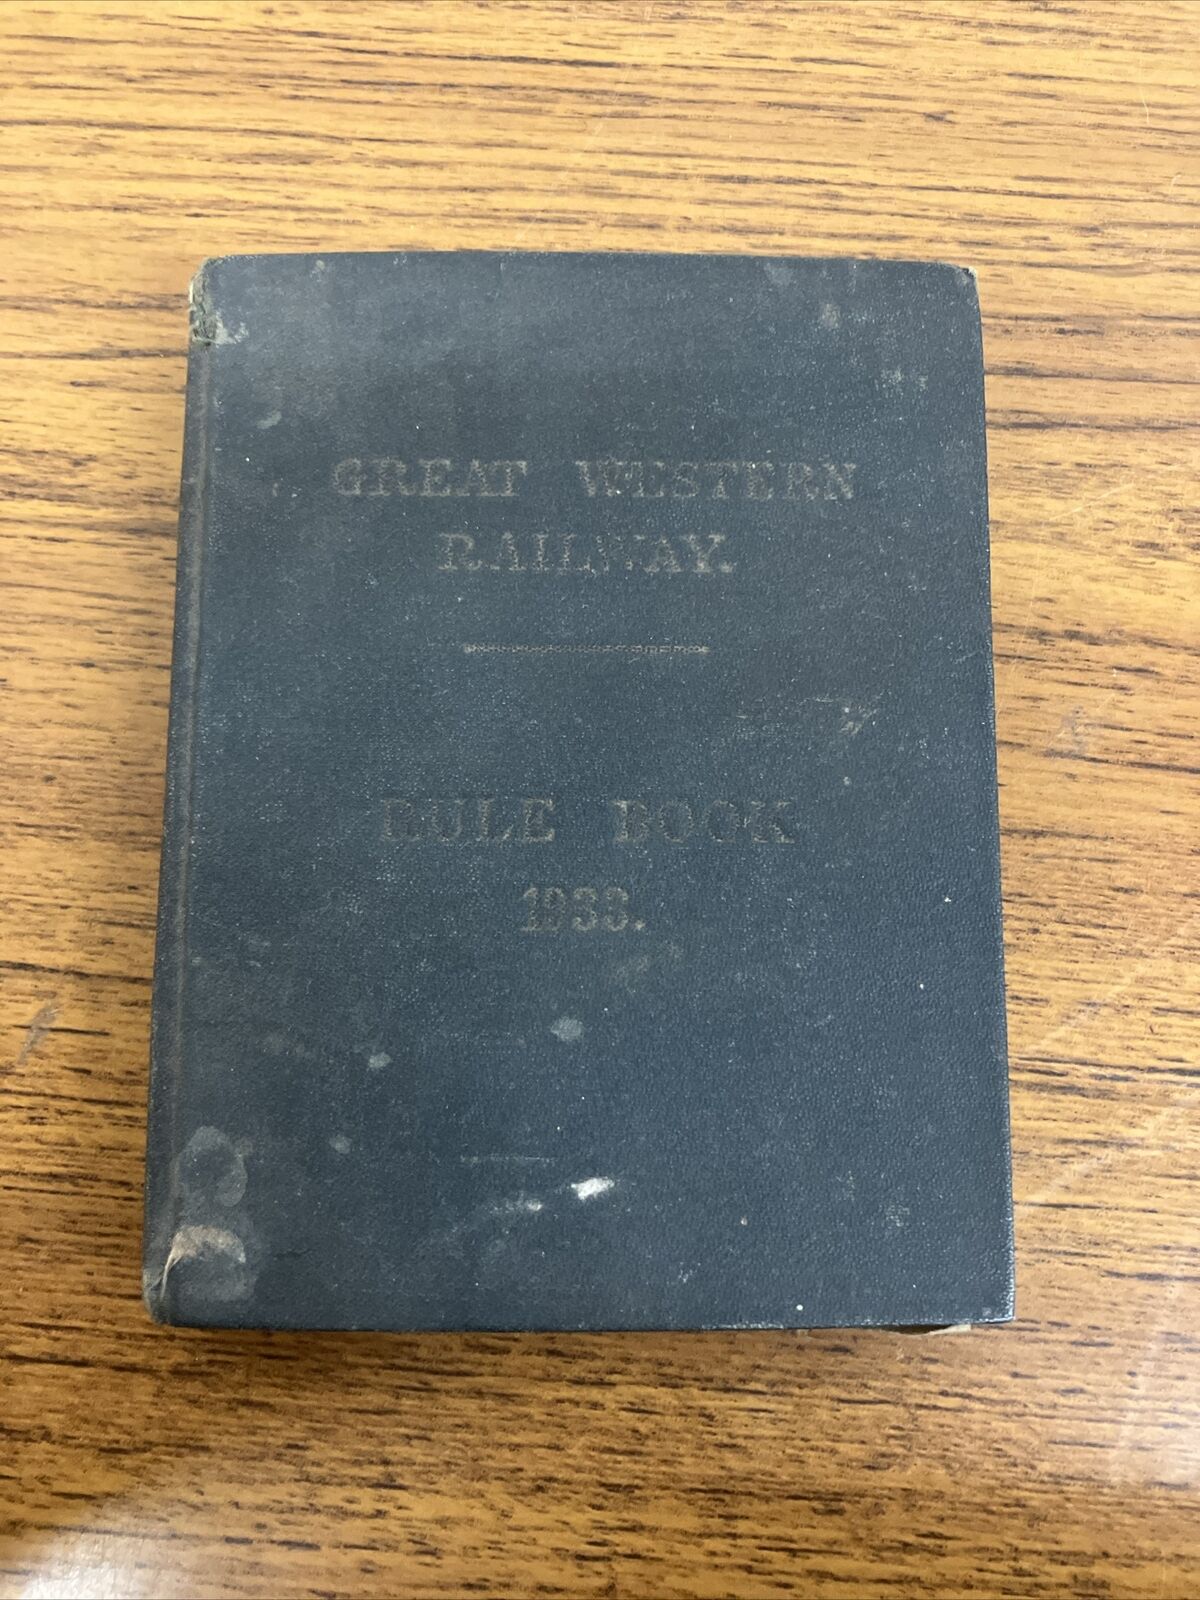 Vintage - Great Western Railway Rule Book 1933